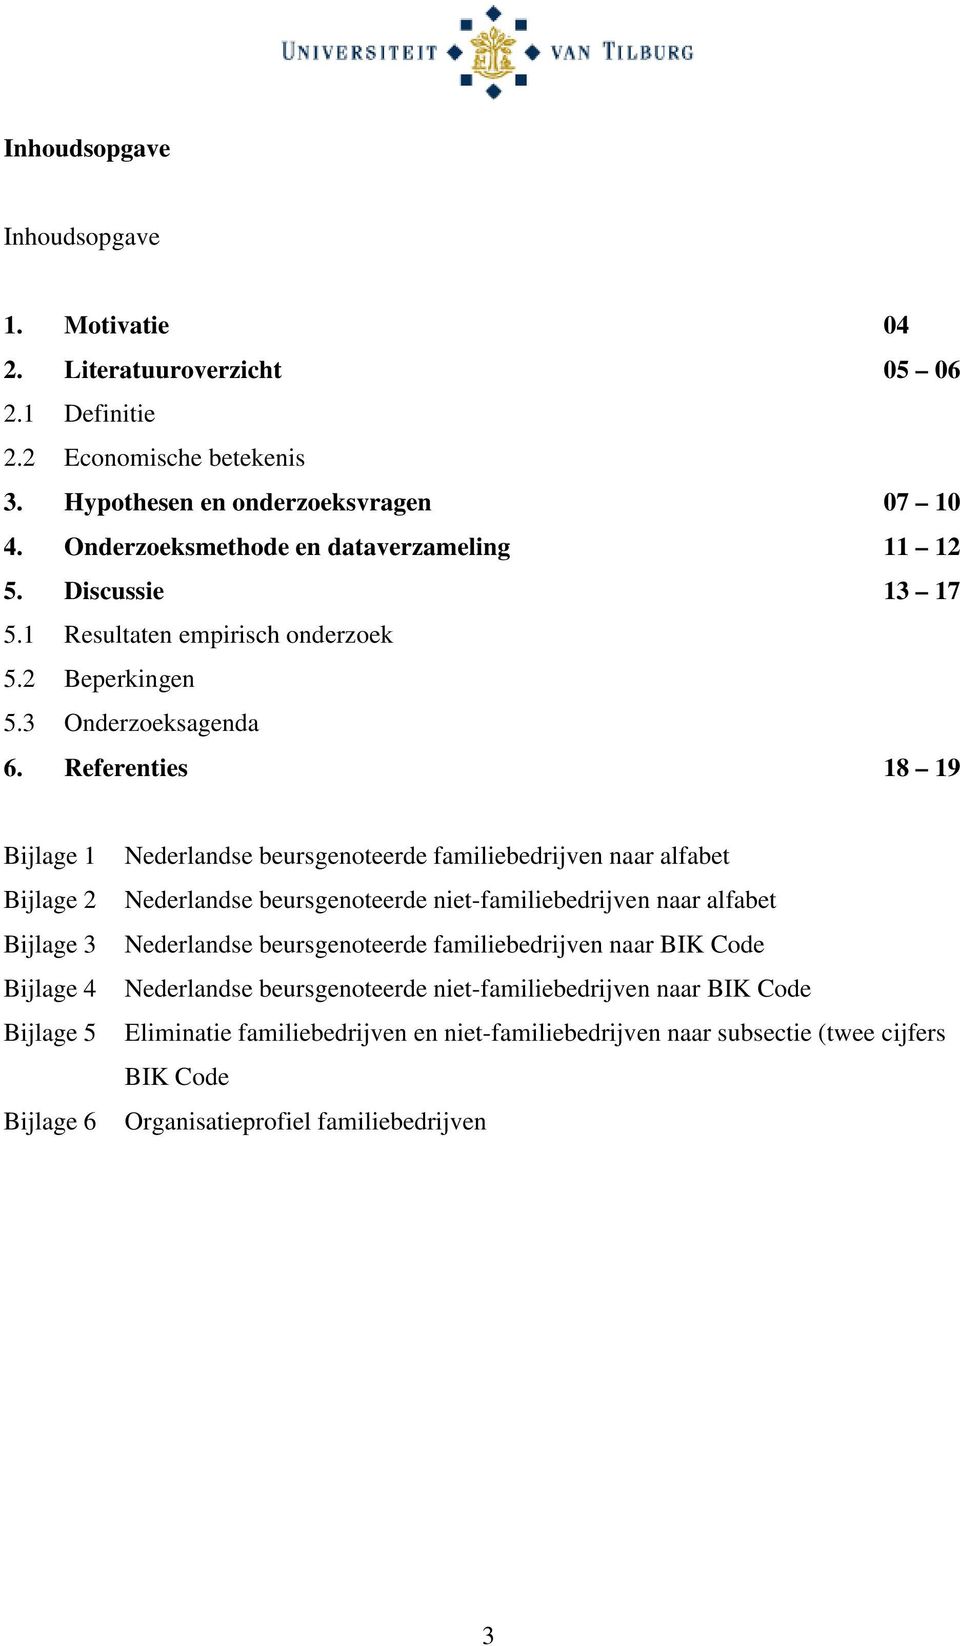 Referenties 18 19 Bijlage 1 Bijlage 2 Bijlage 3 Bijlage 4 Bijlage 5 Bijlage 6 Nederlandse beursgenoteerde familiebedrijven naar alfabet Nederlandse beursgenoteerde niet-familiebedrijven